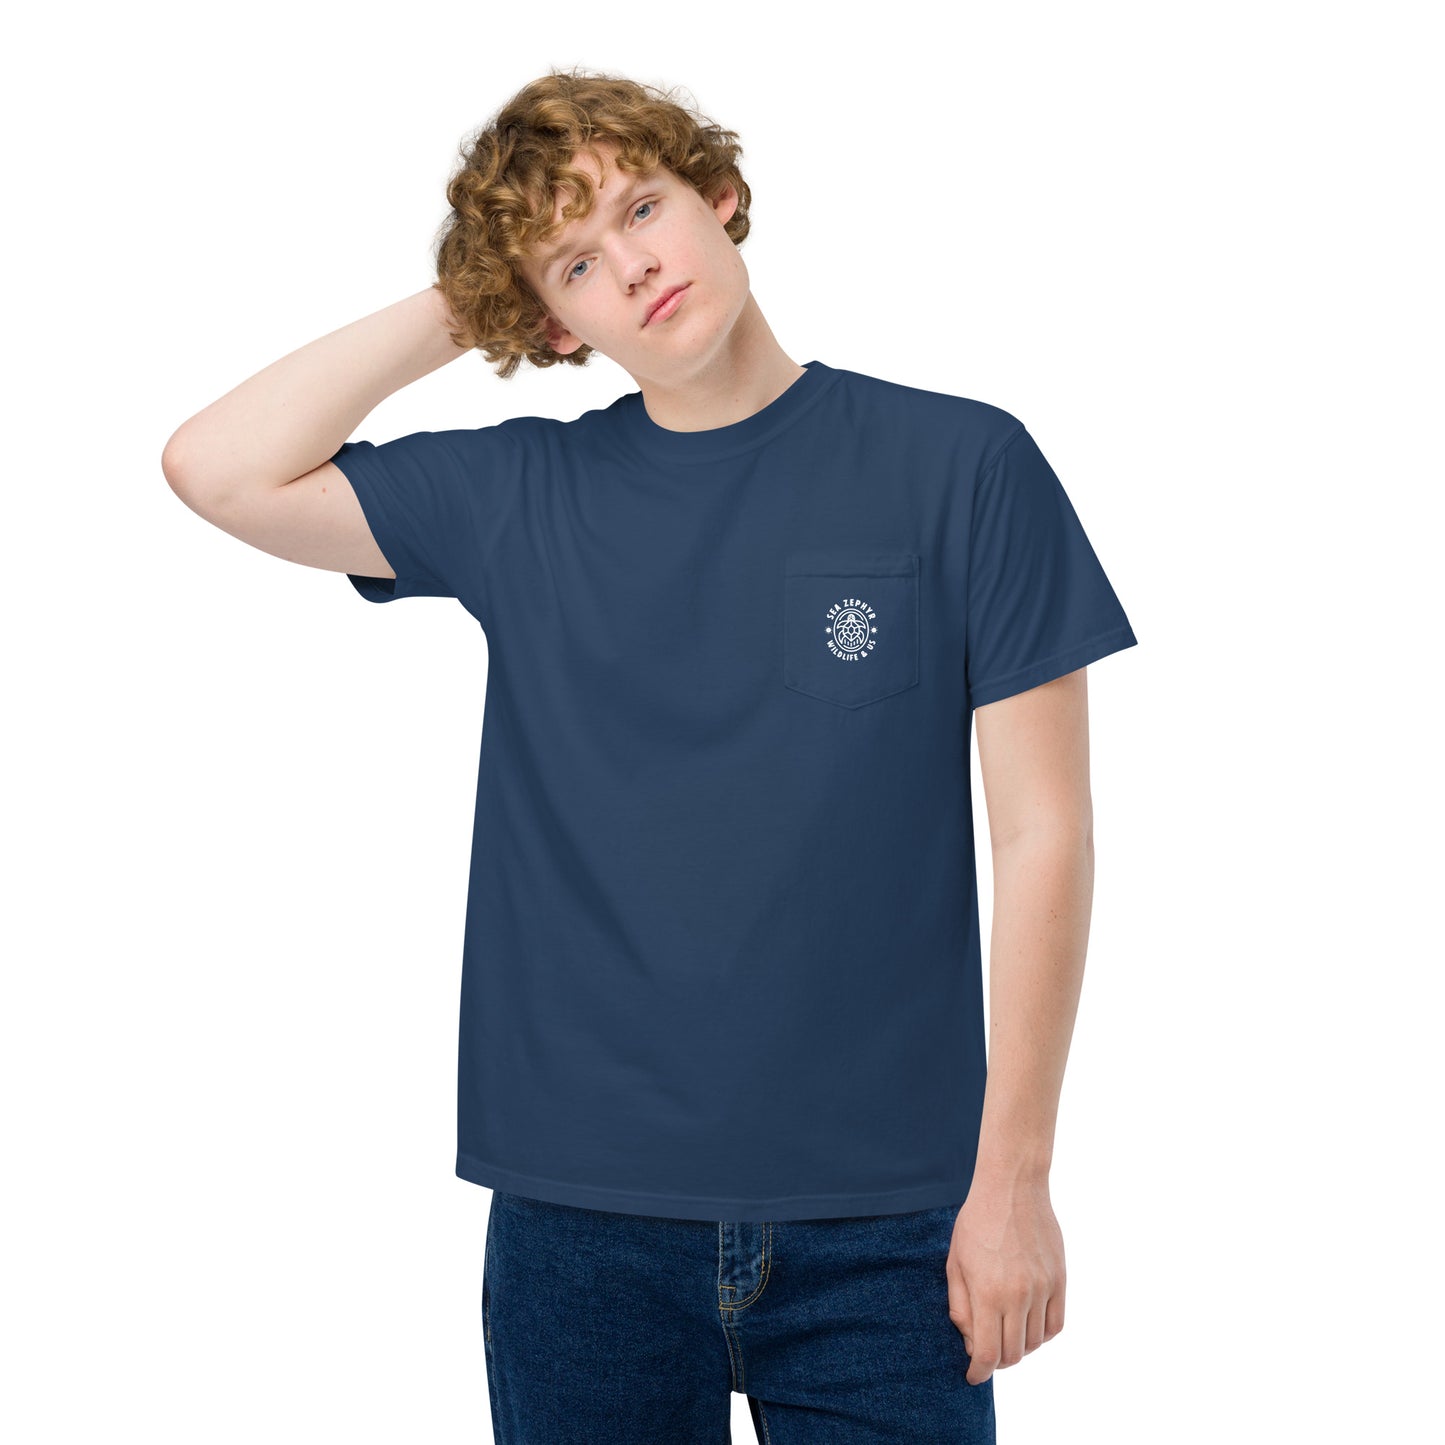 Sea Zephyr unisex garment-dyed pocket t-shirt - navy blue